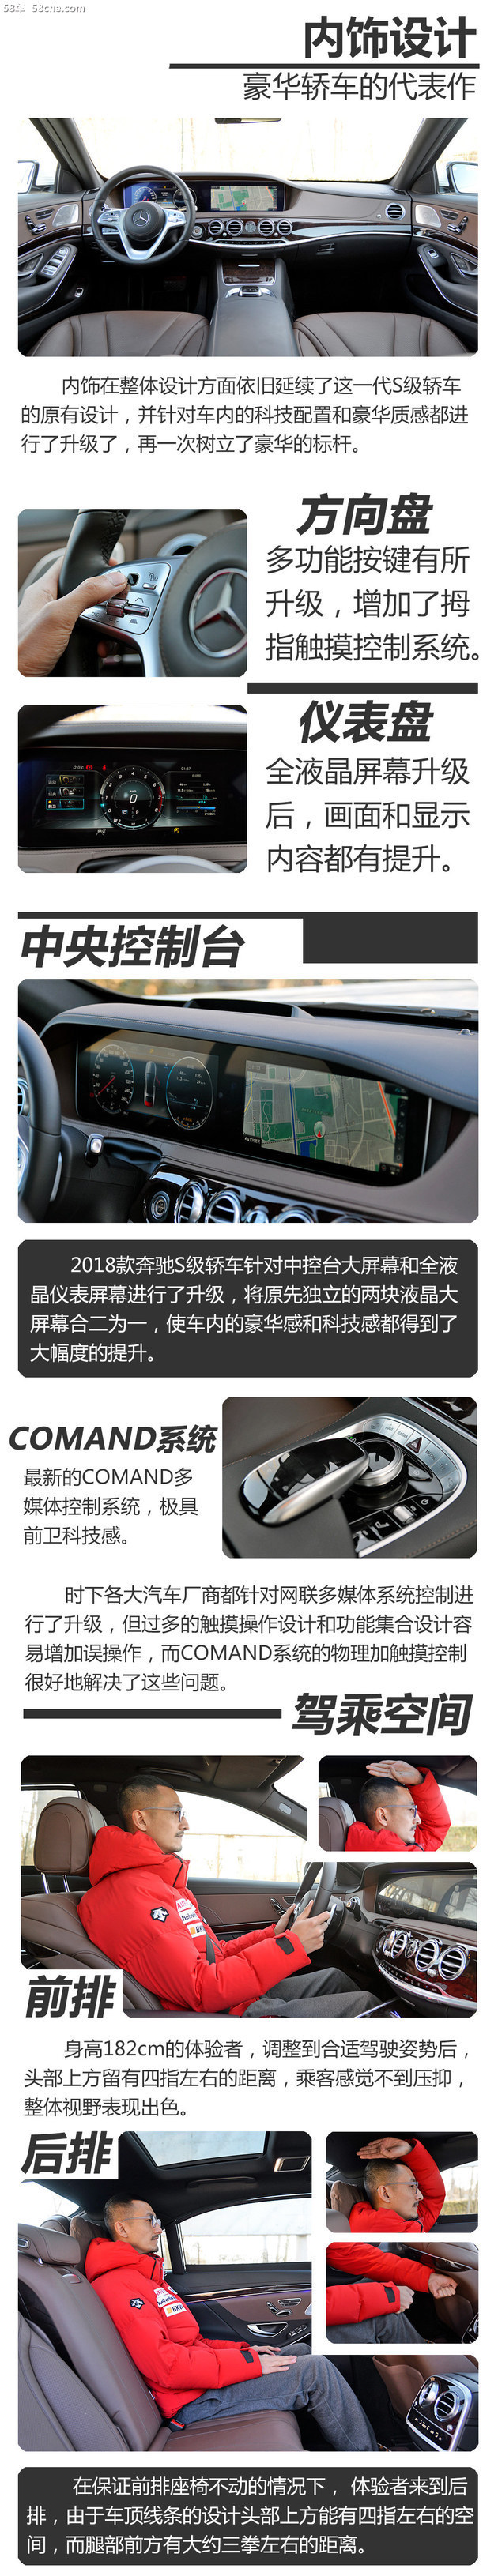 2018款奔驰S450L性能测试 品质有所提升